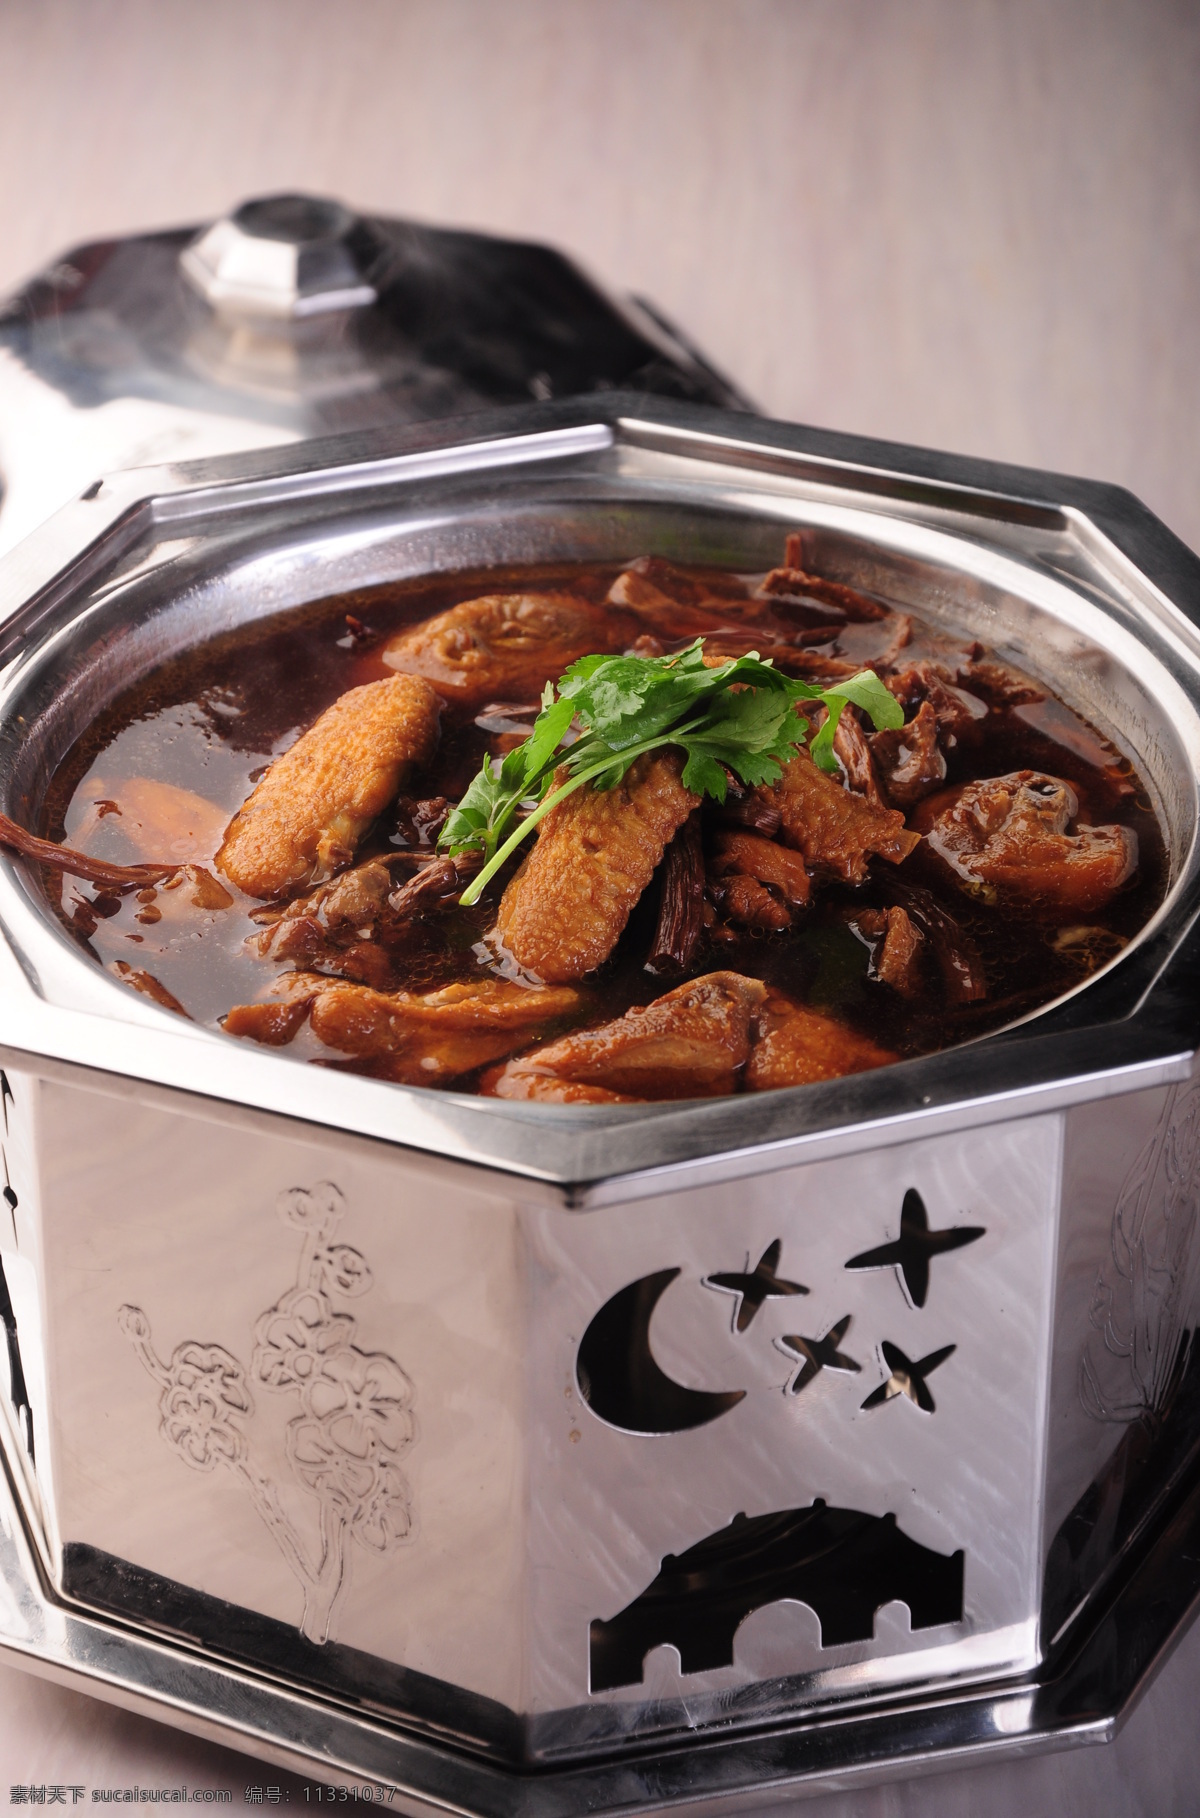 茶树菇炖土鸡 炖土鸡 蘑菇炖鸡 热菜 美食 传统美食 餐饮美食